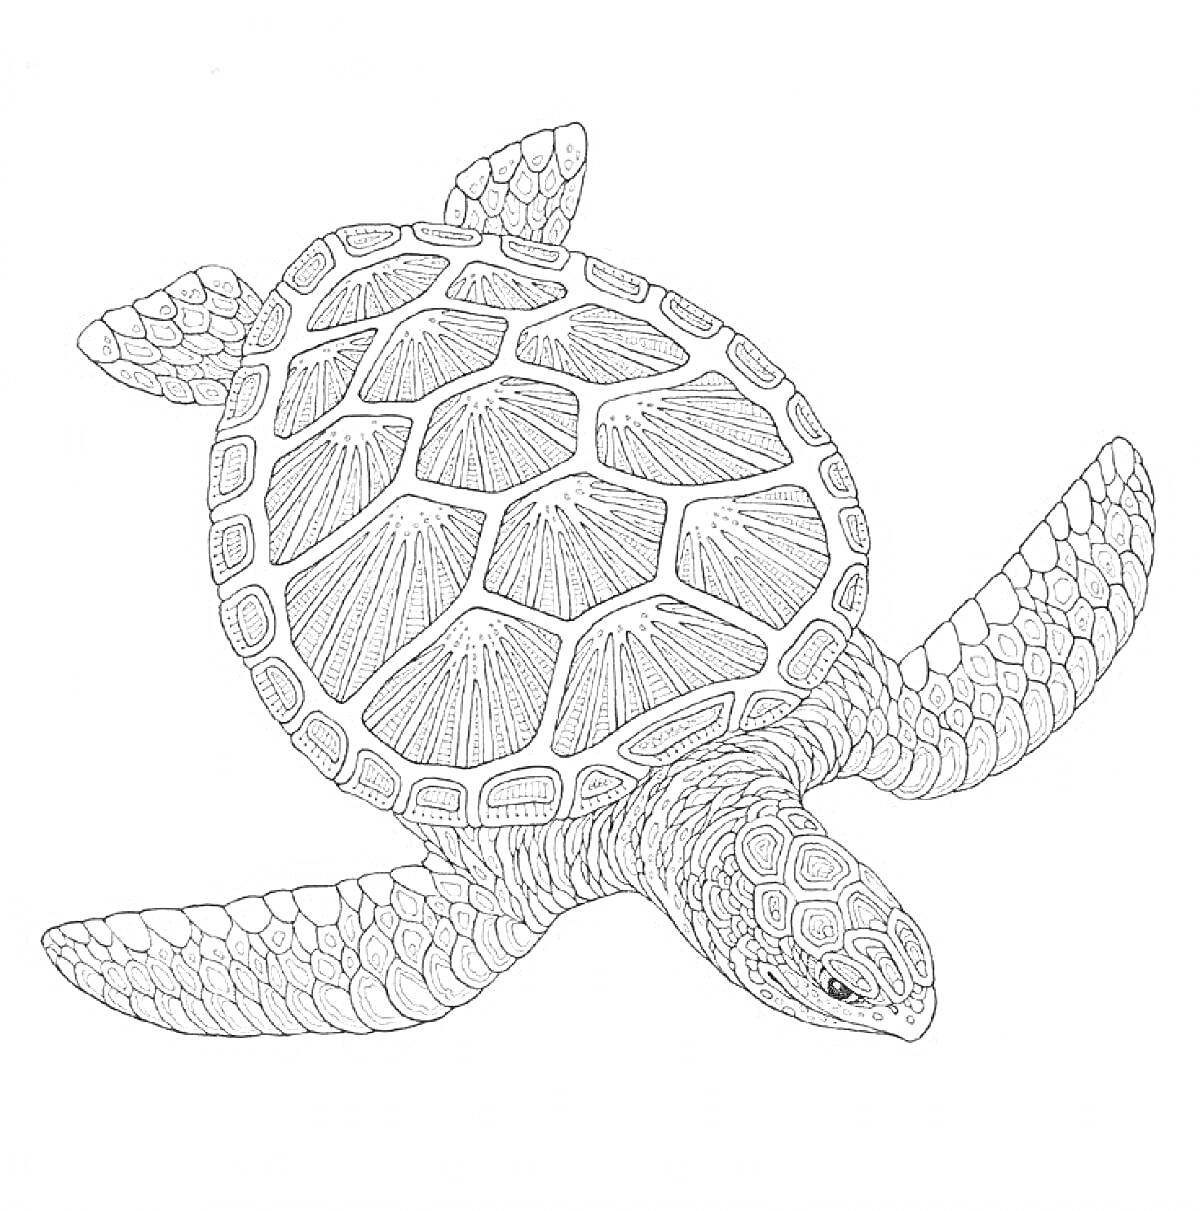 Раскраска Черепаха с деталями на панцире и плавниках